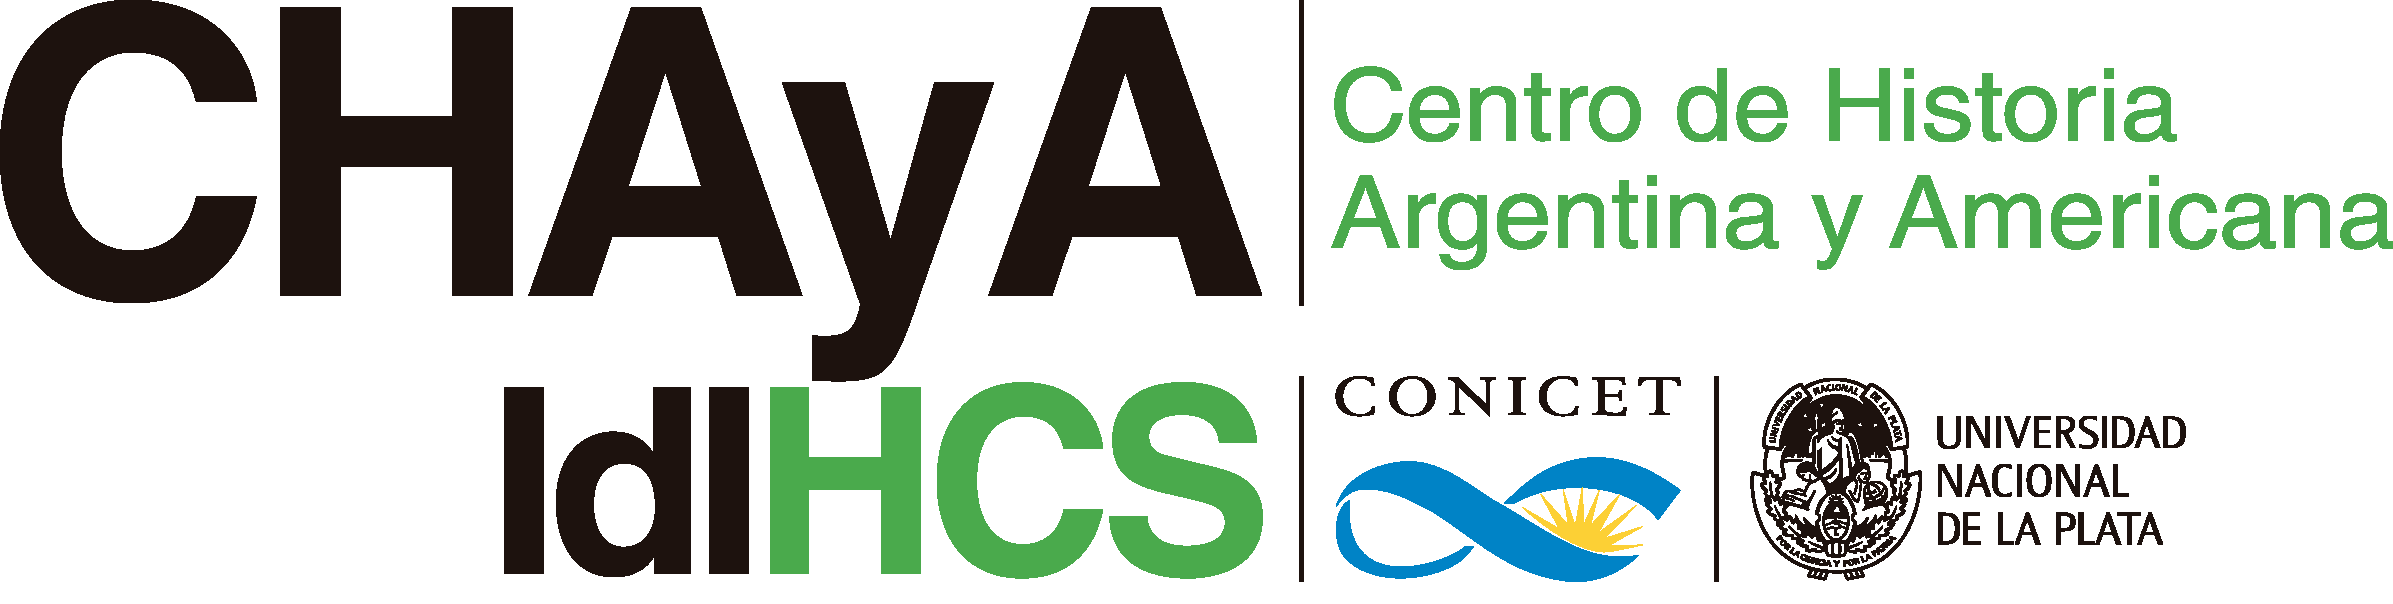 Centro de Historia Argentina y Americana